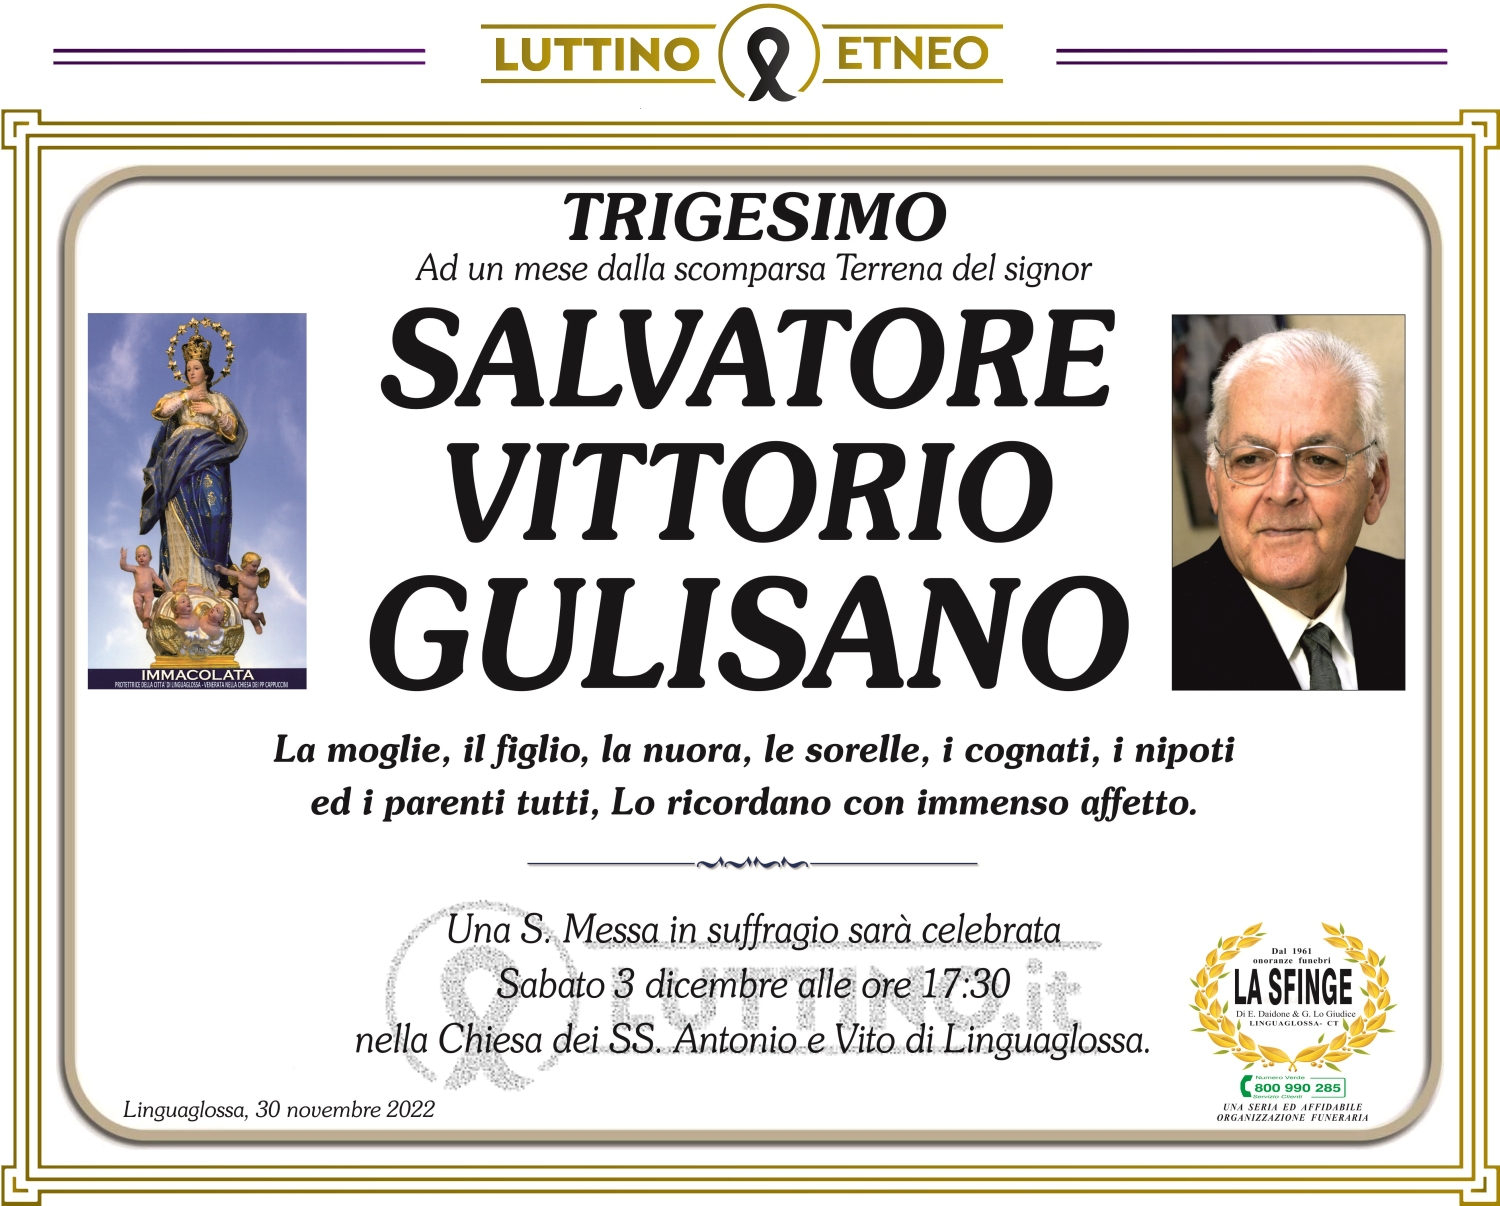 Salvatore Vittorio Gulisano